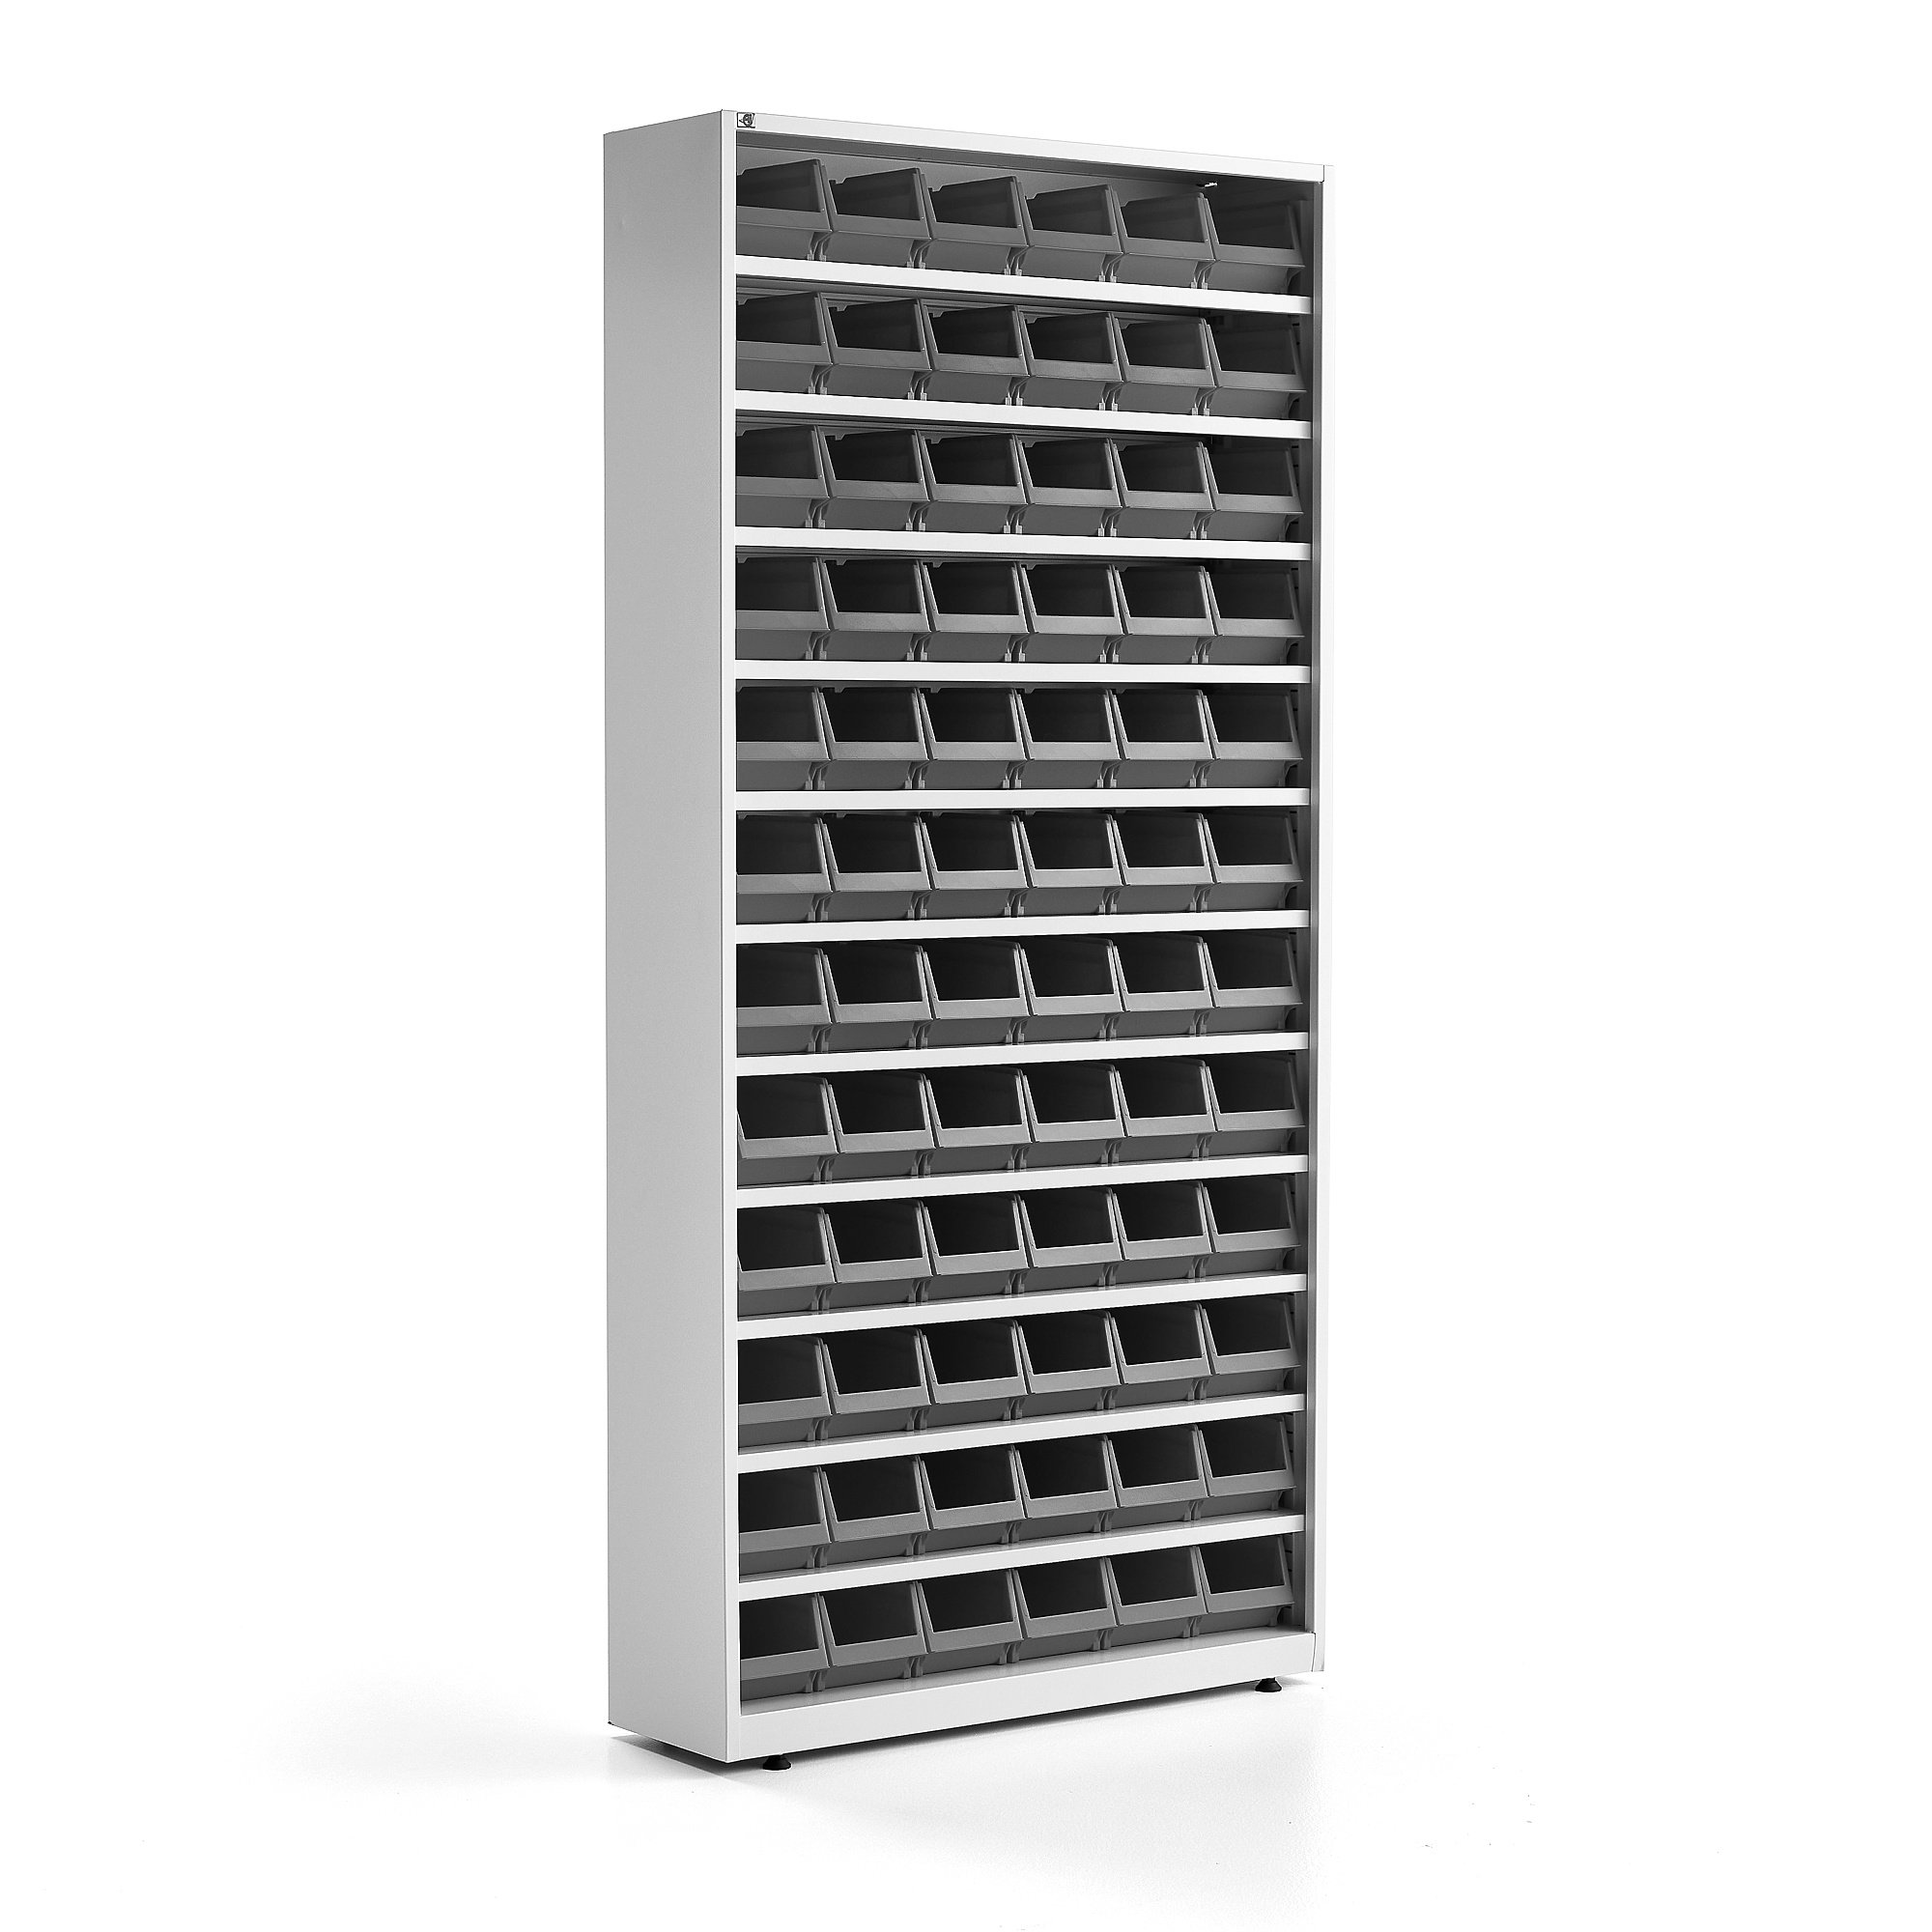 E-shop Skriňa s plastovými boxmi, 72 šedých boxov, 2000x950x250 mm